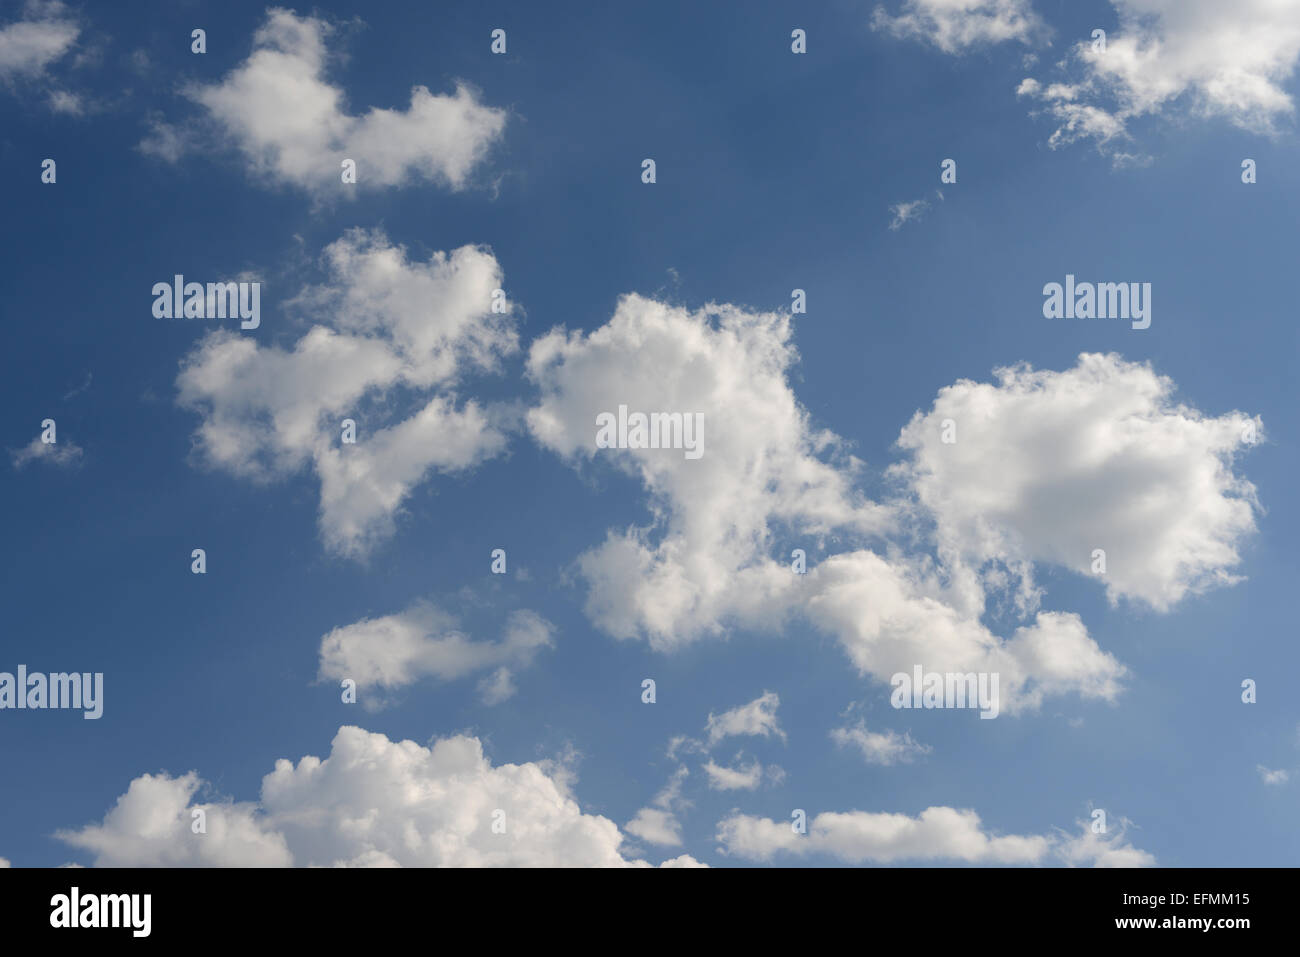 Schöne Wolkengebilde - flauschige weiße Wolken in einem sonnigen blauen Himmel. Stockfoto